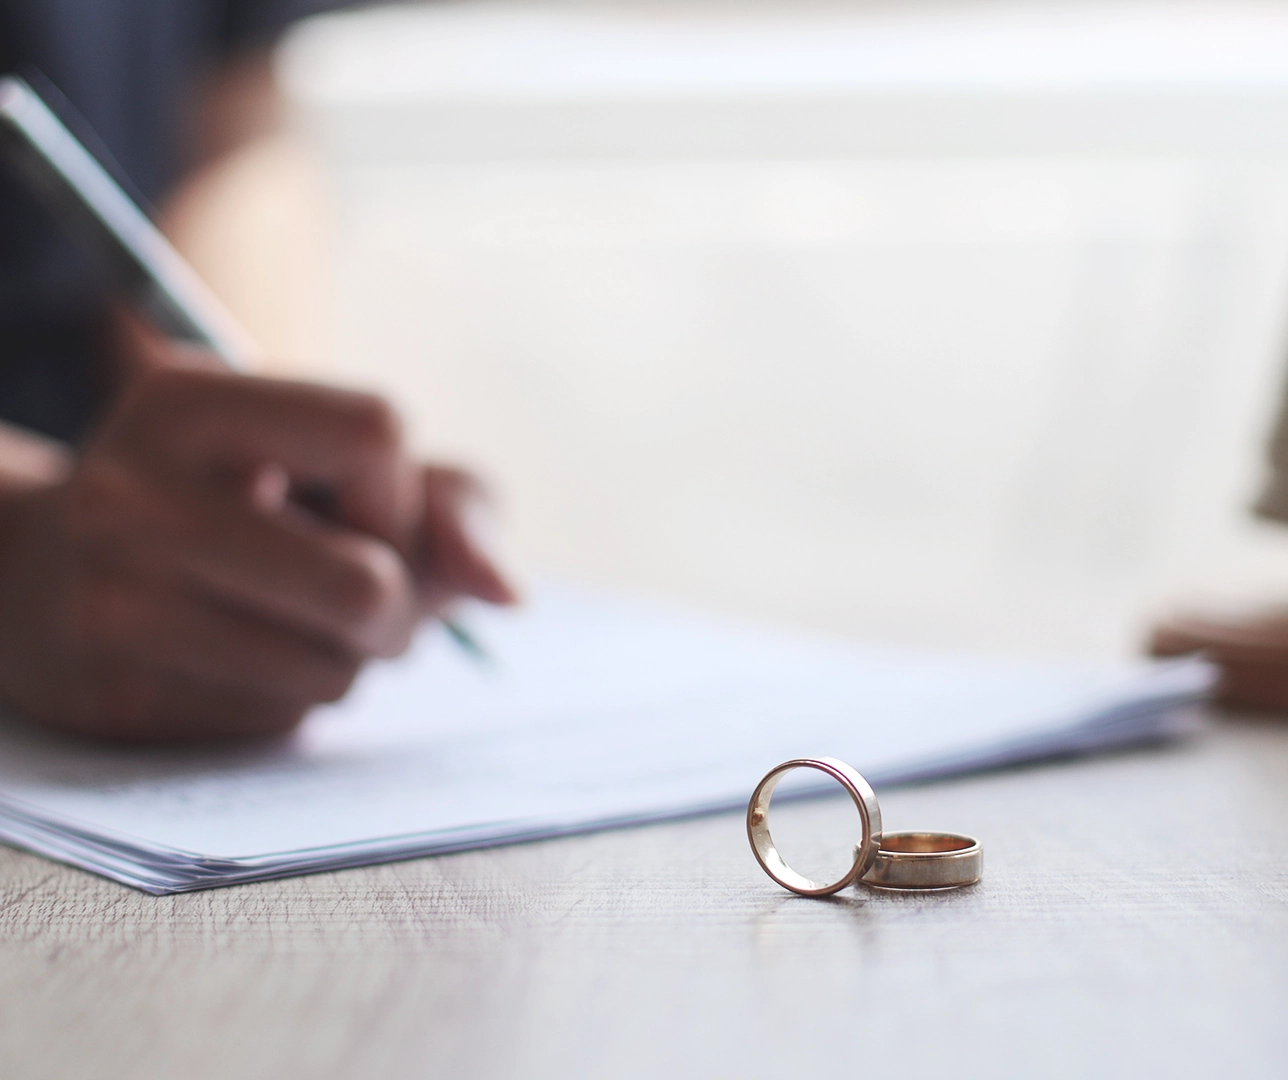 Unos anillos en primer plano y una persona firmando el divorcio de fondo.